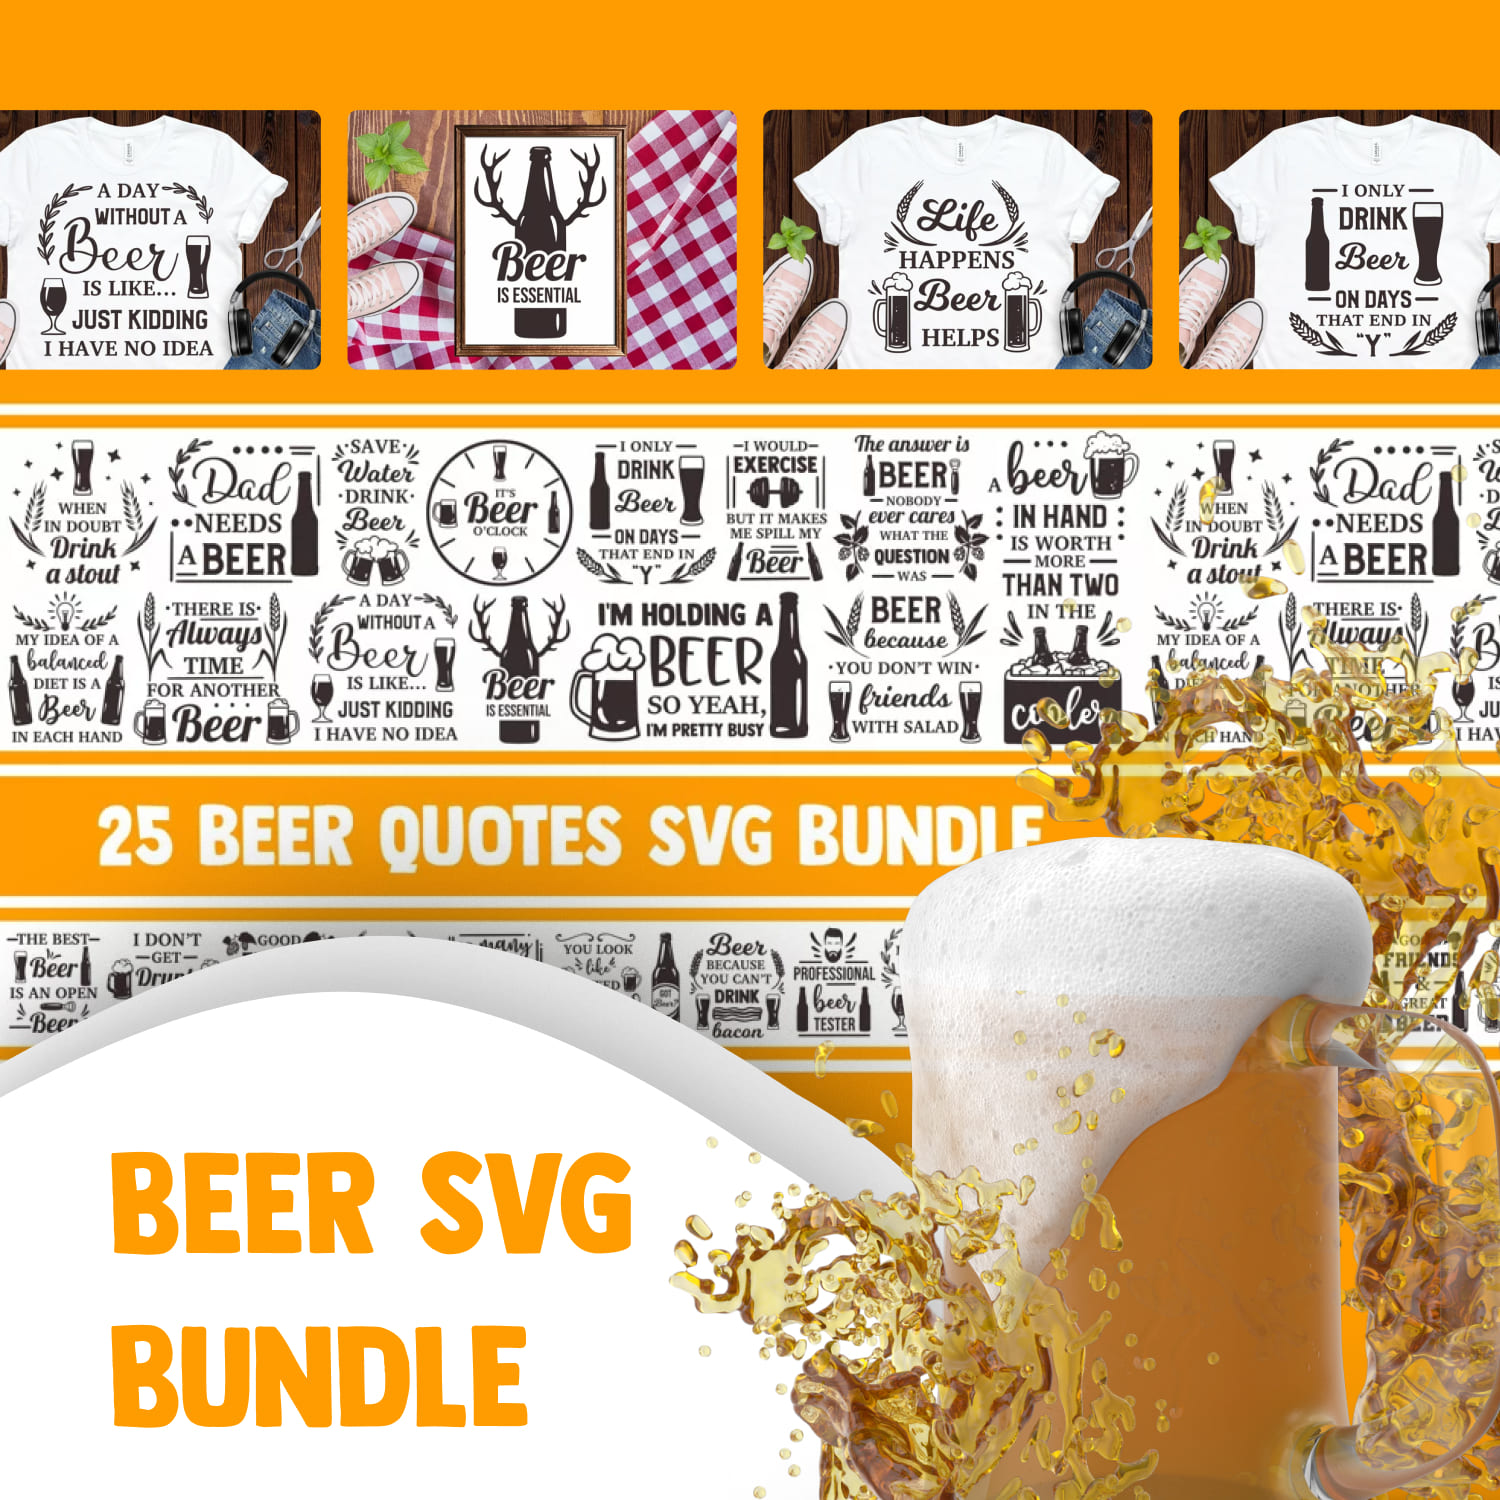 Beer SVG Bundle, alcohol svg, drinking svg, dad svg beer mug.